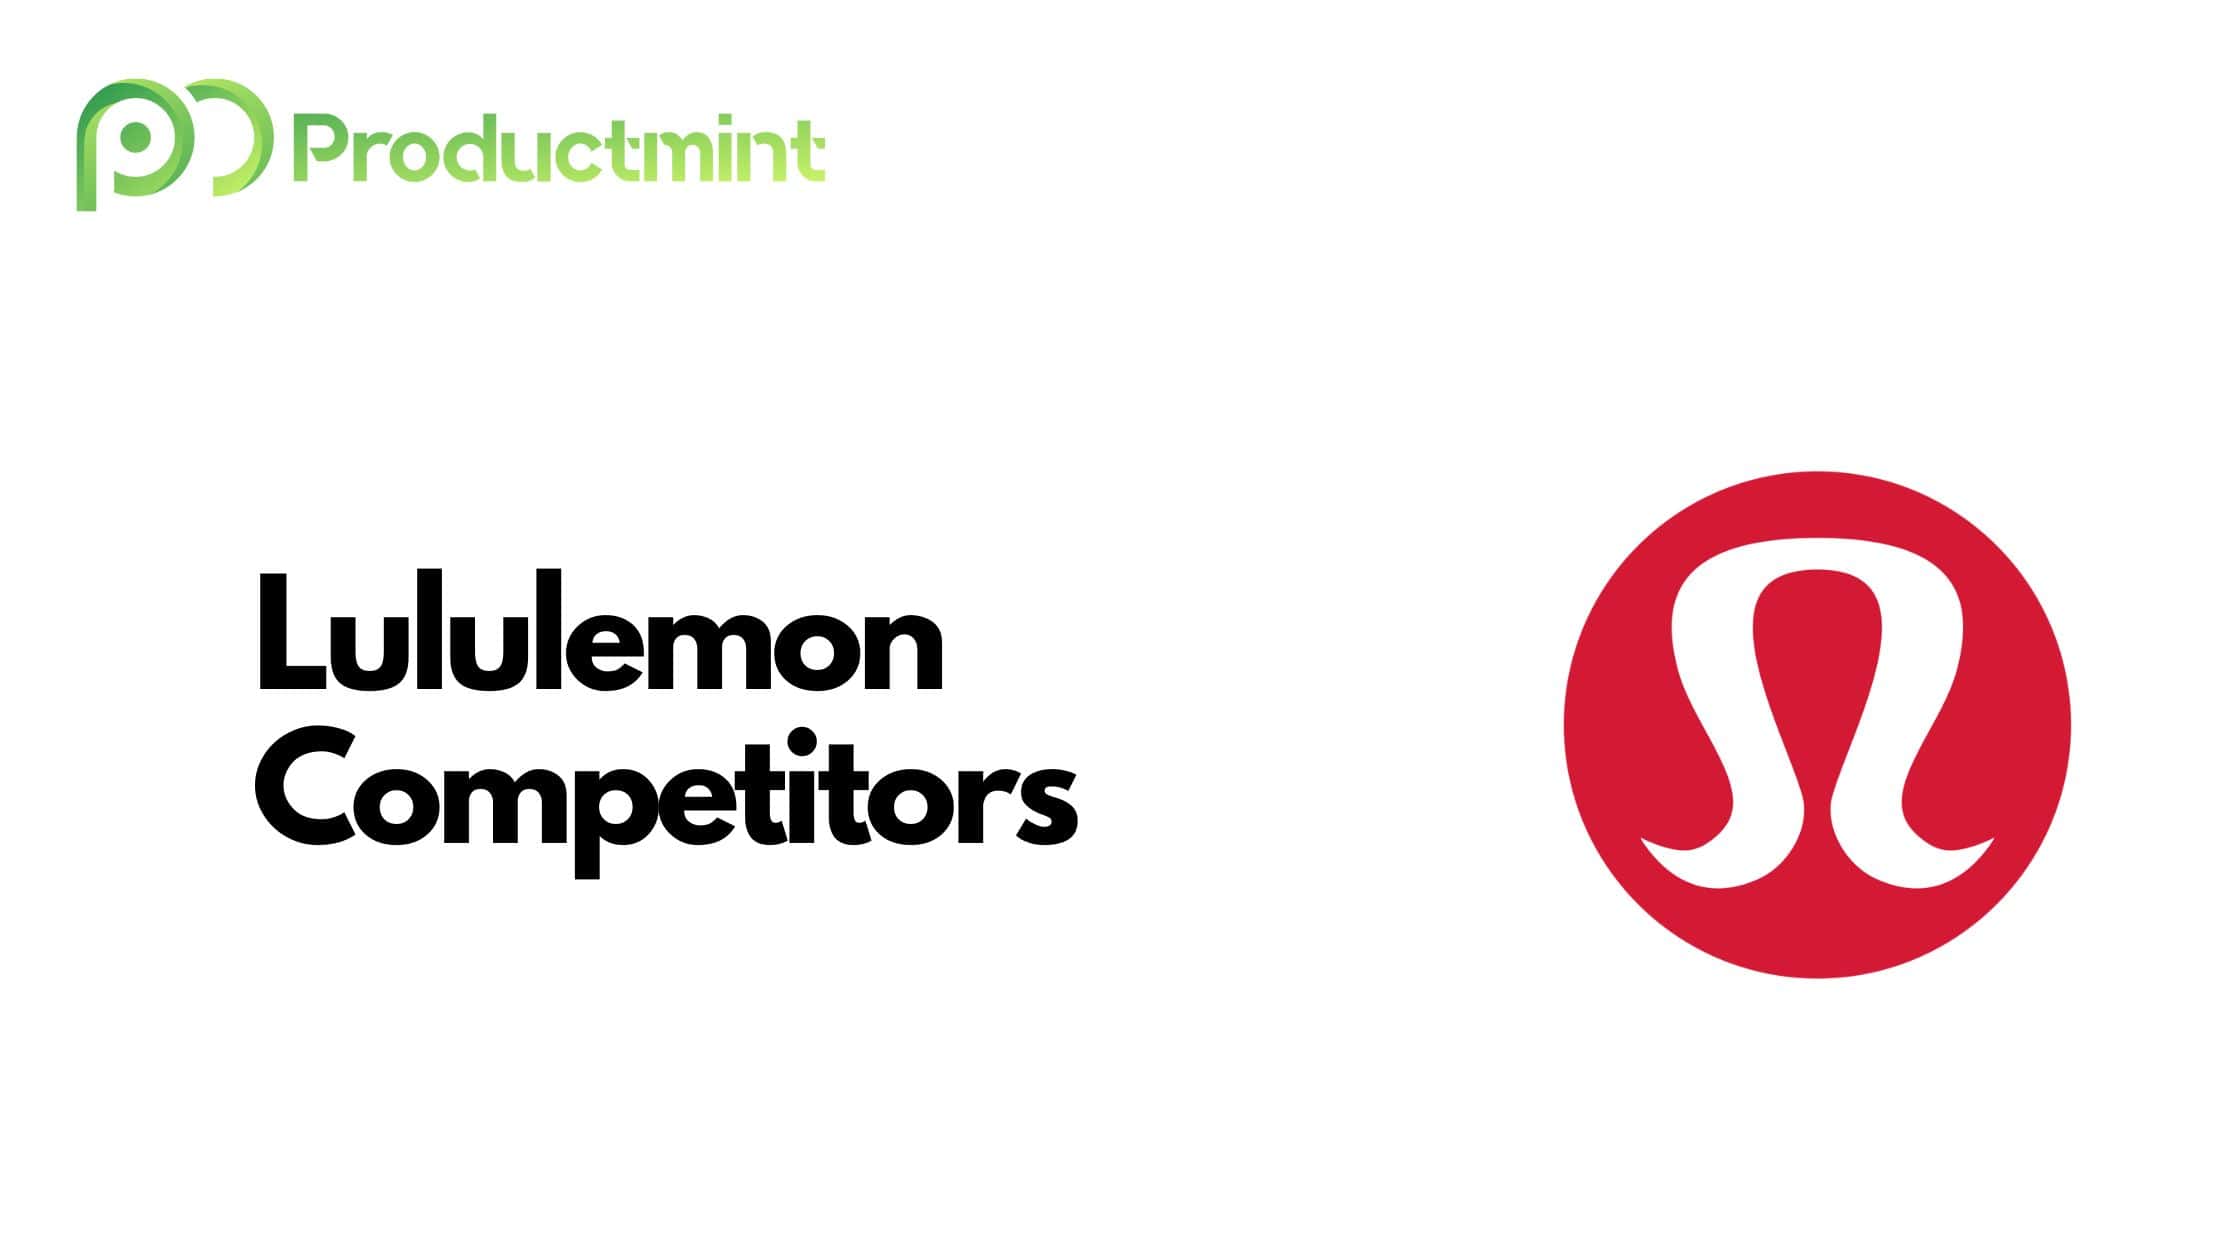 Lululemon Competitors